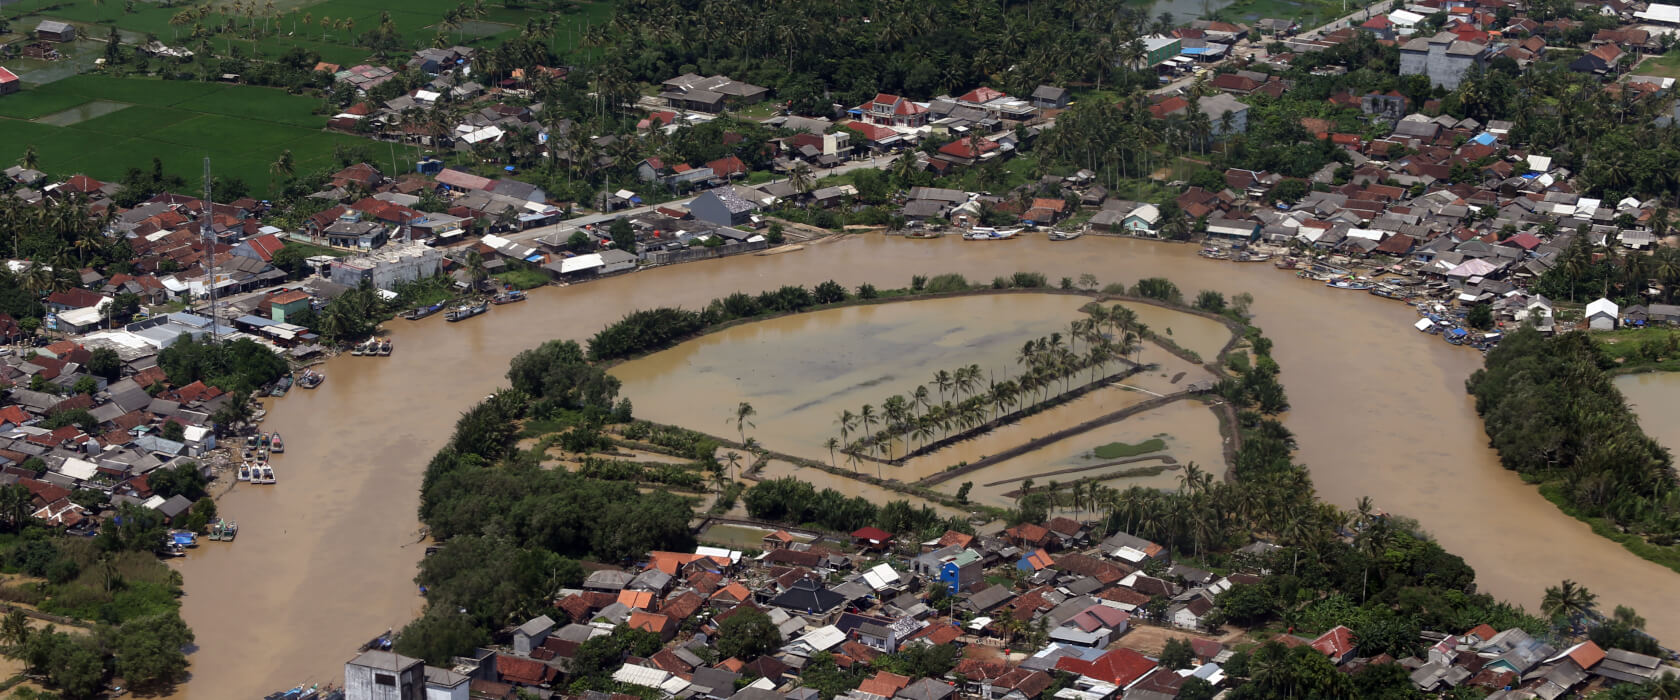 Bauen in Überschwemmungsgebieten